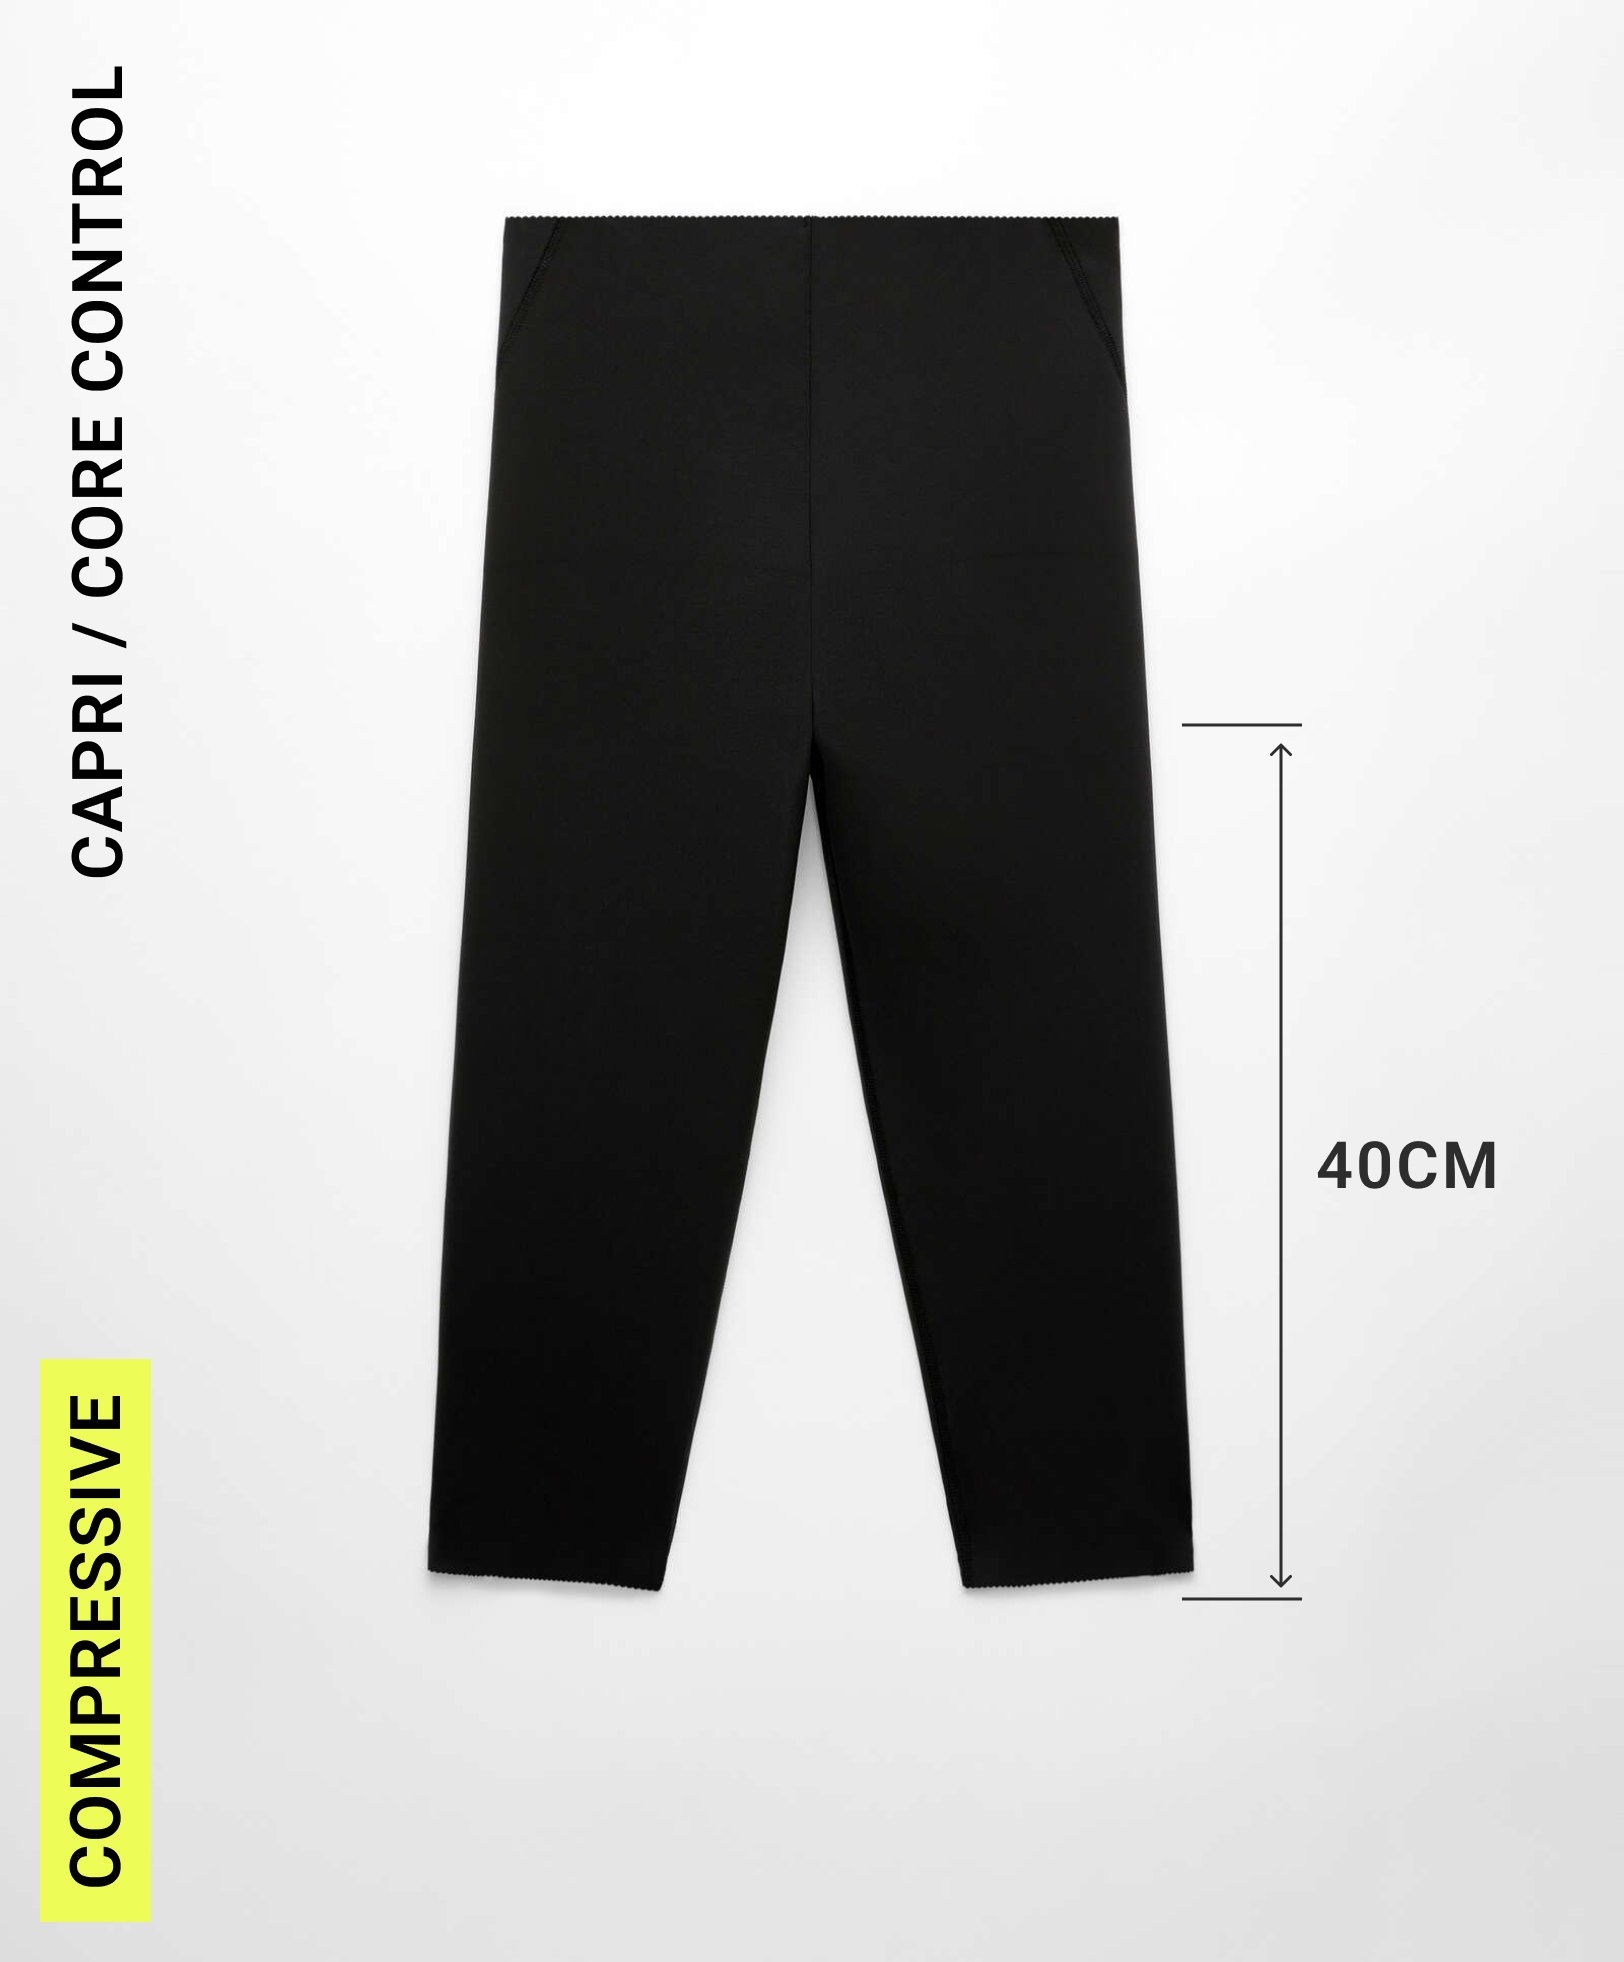 Compressive core control 40cm capri leggings